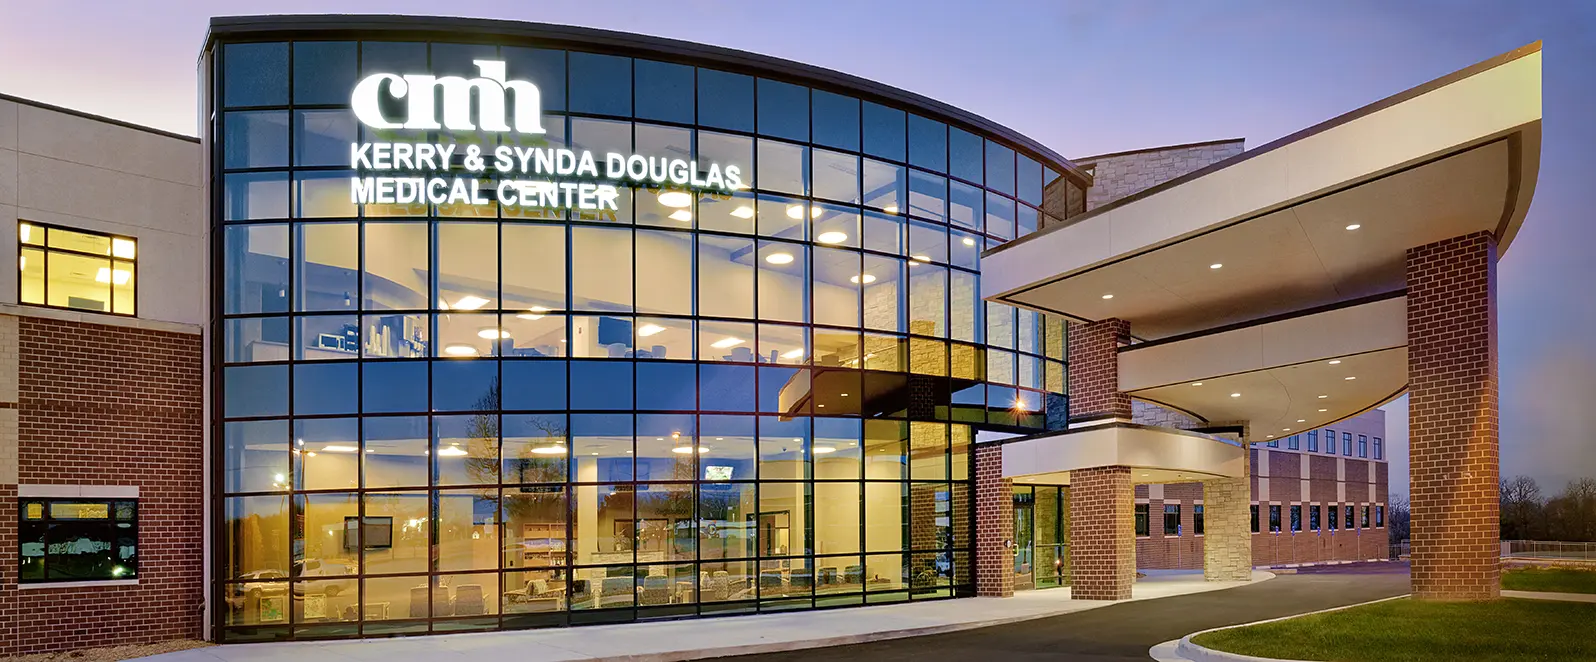 CMH Eye Specialty Center at Douglas Medical Center exterior